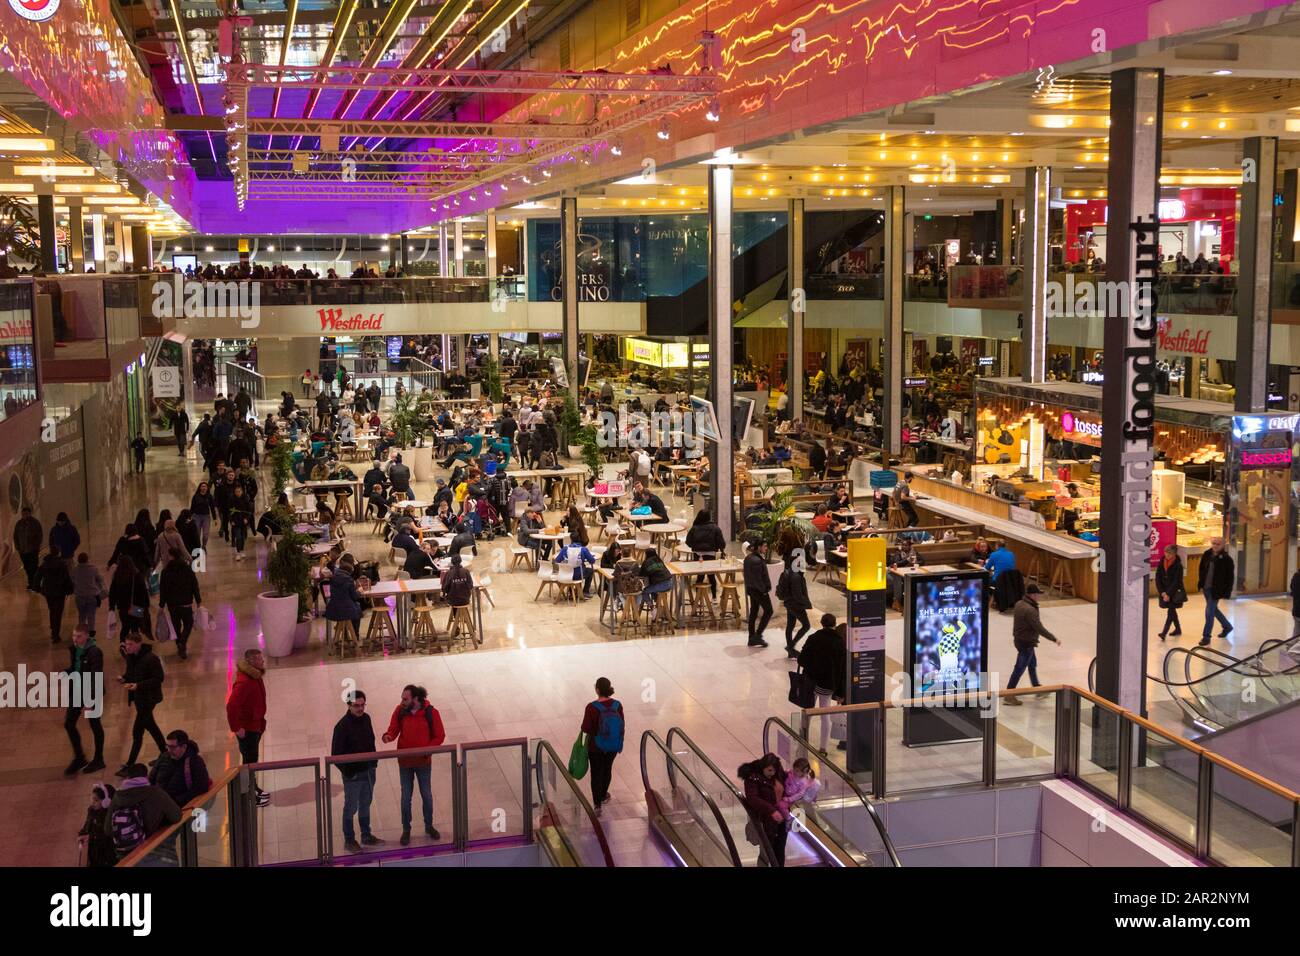 Interior del centro comercial Westfield, zona de restaurantes, stratford, londres, reino unido Foto de stock